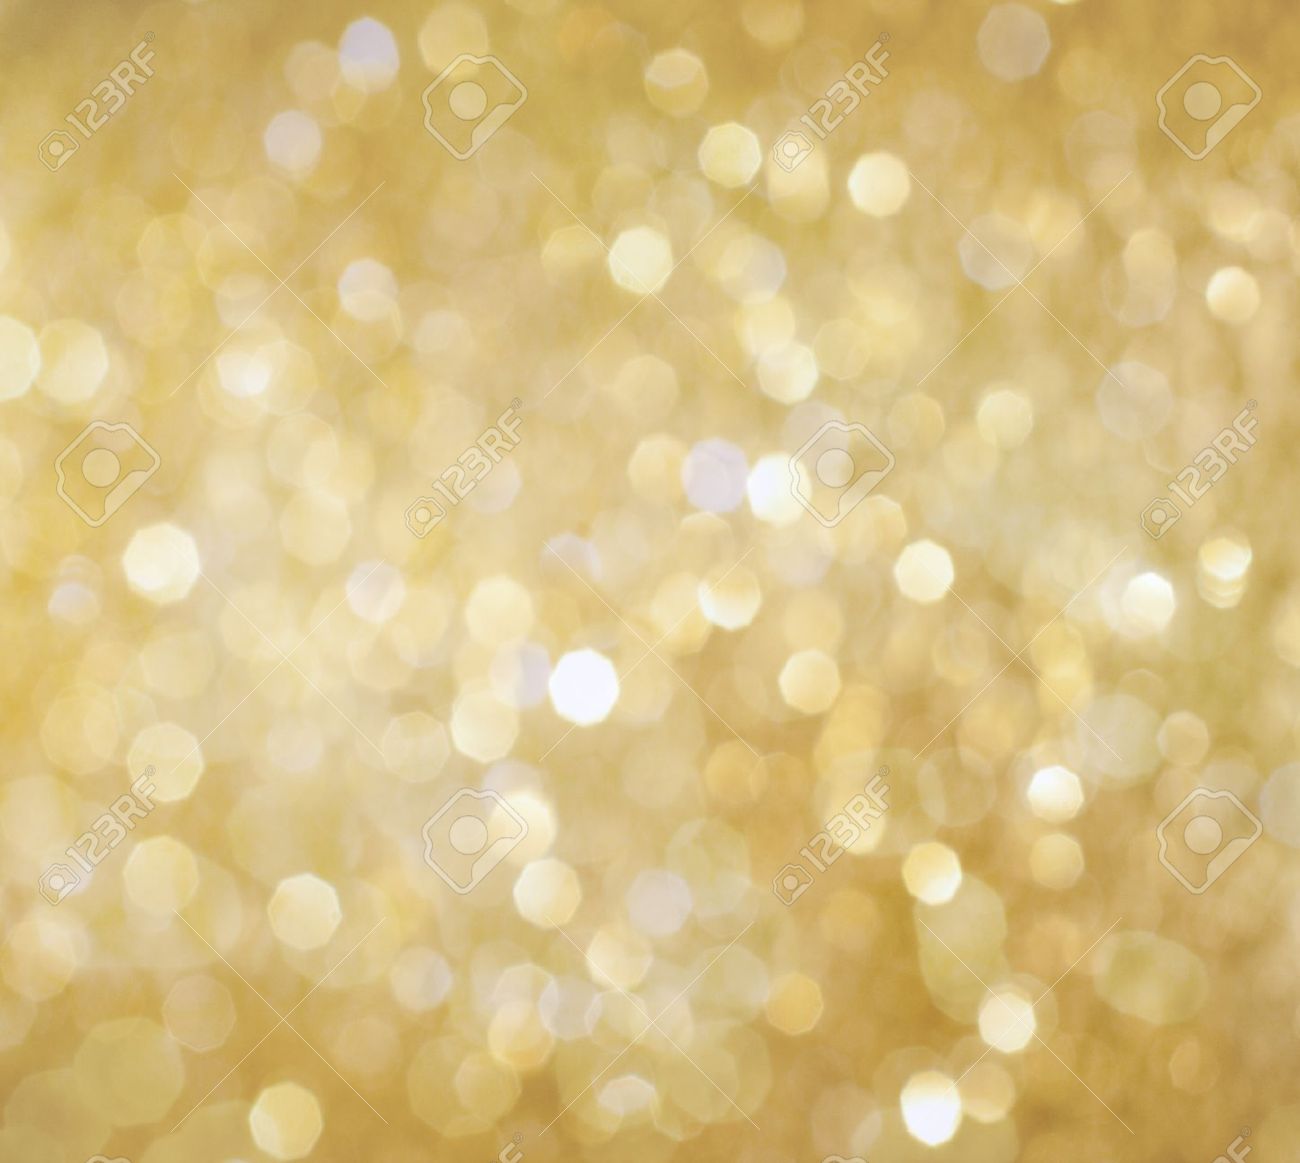 Hãy thưởng thức hình nền ánh sáng vàng phấn trên WallpaperSafari để trang trí cho điện thoại của bạn thêm phần rực rỡ và cuốn hút. Được thực hiện bởi các nhiếp ảnh gia tài ba, các hình nền này là những tác phẩm nghệ thuật đẹp mắt, với ánh sáng lung linh như bầu trời đầy sao đêm.